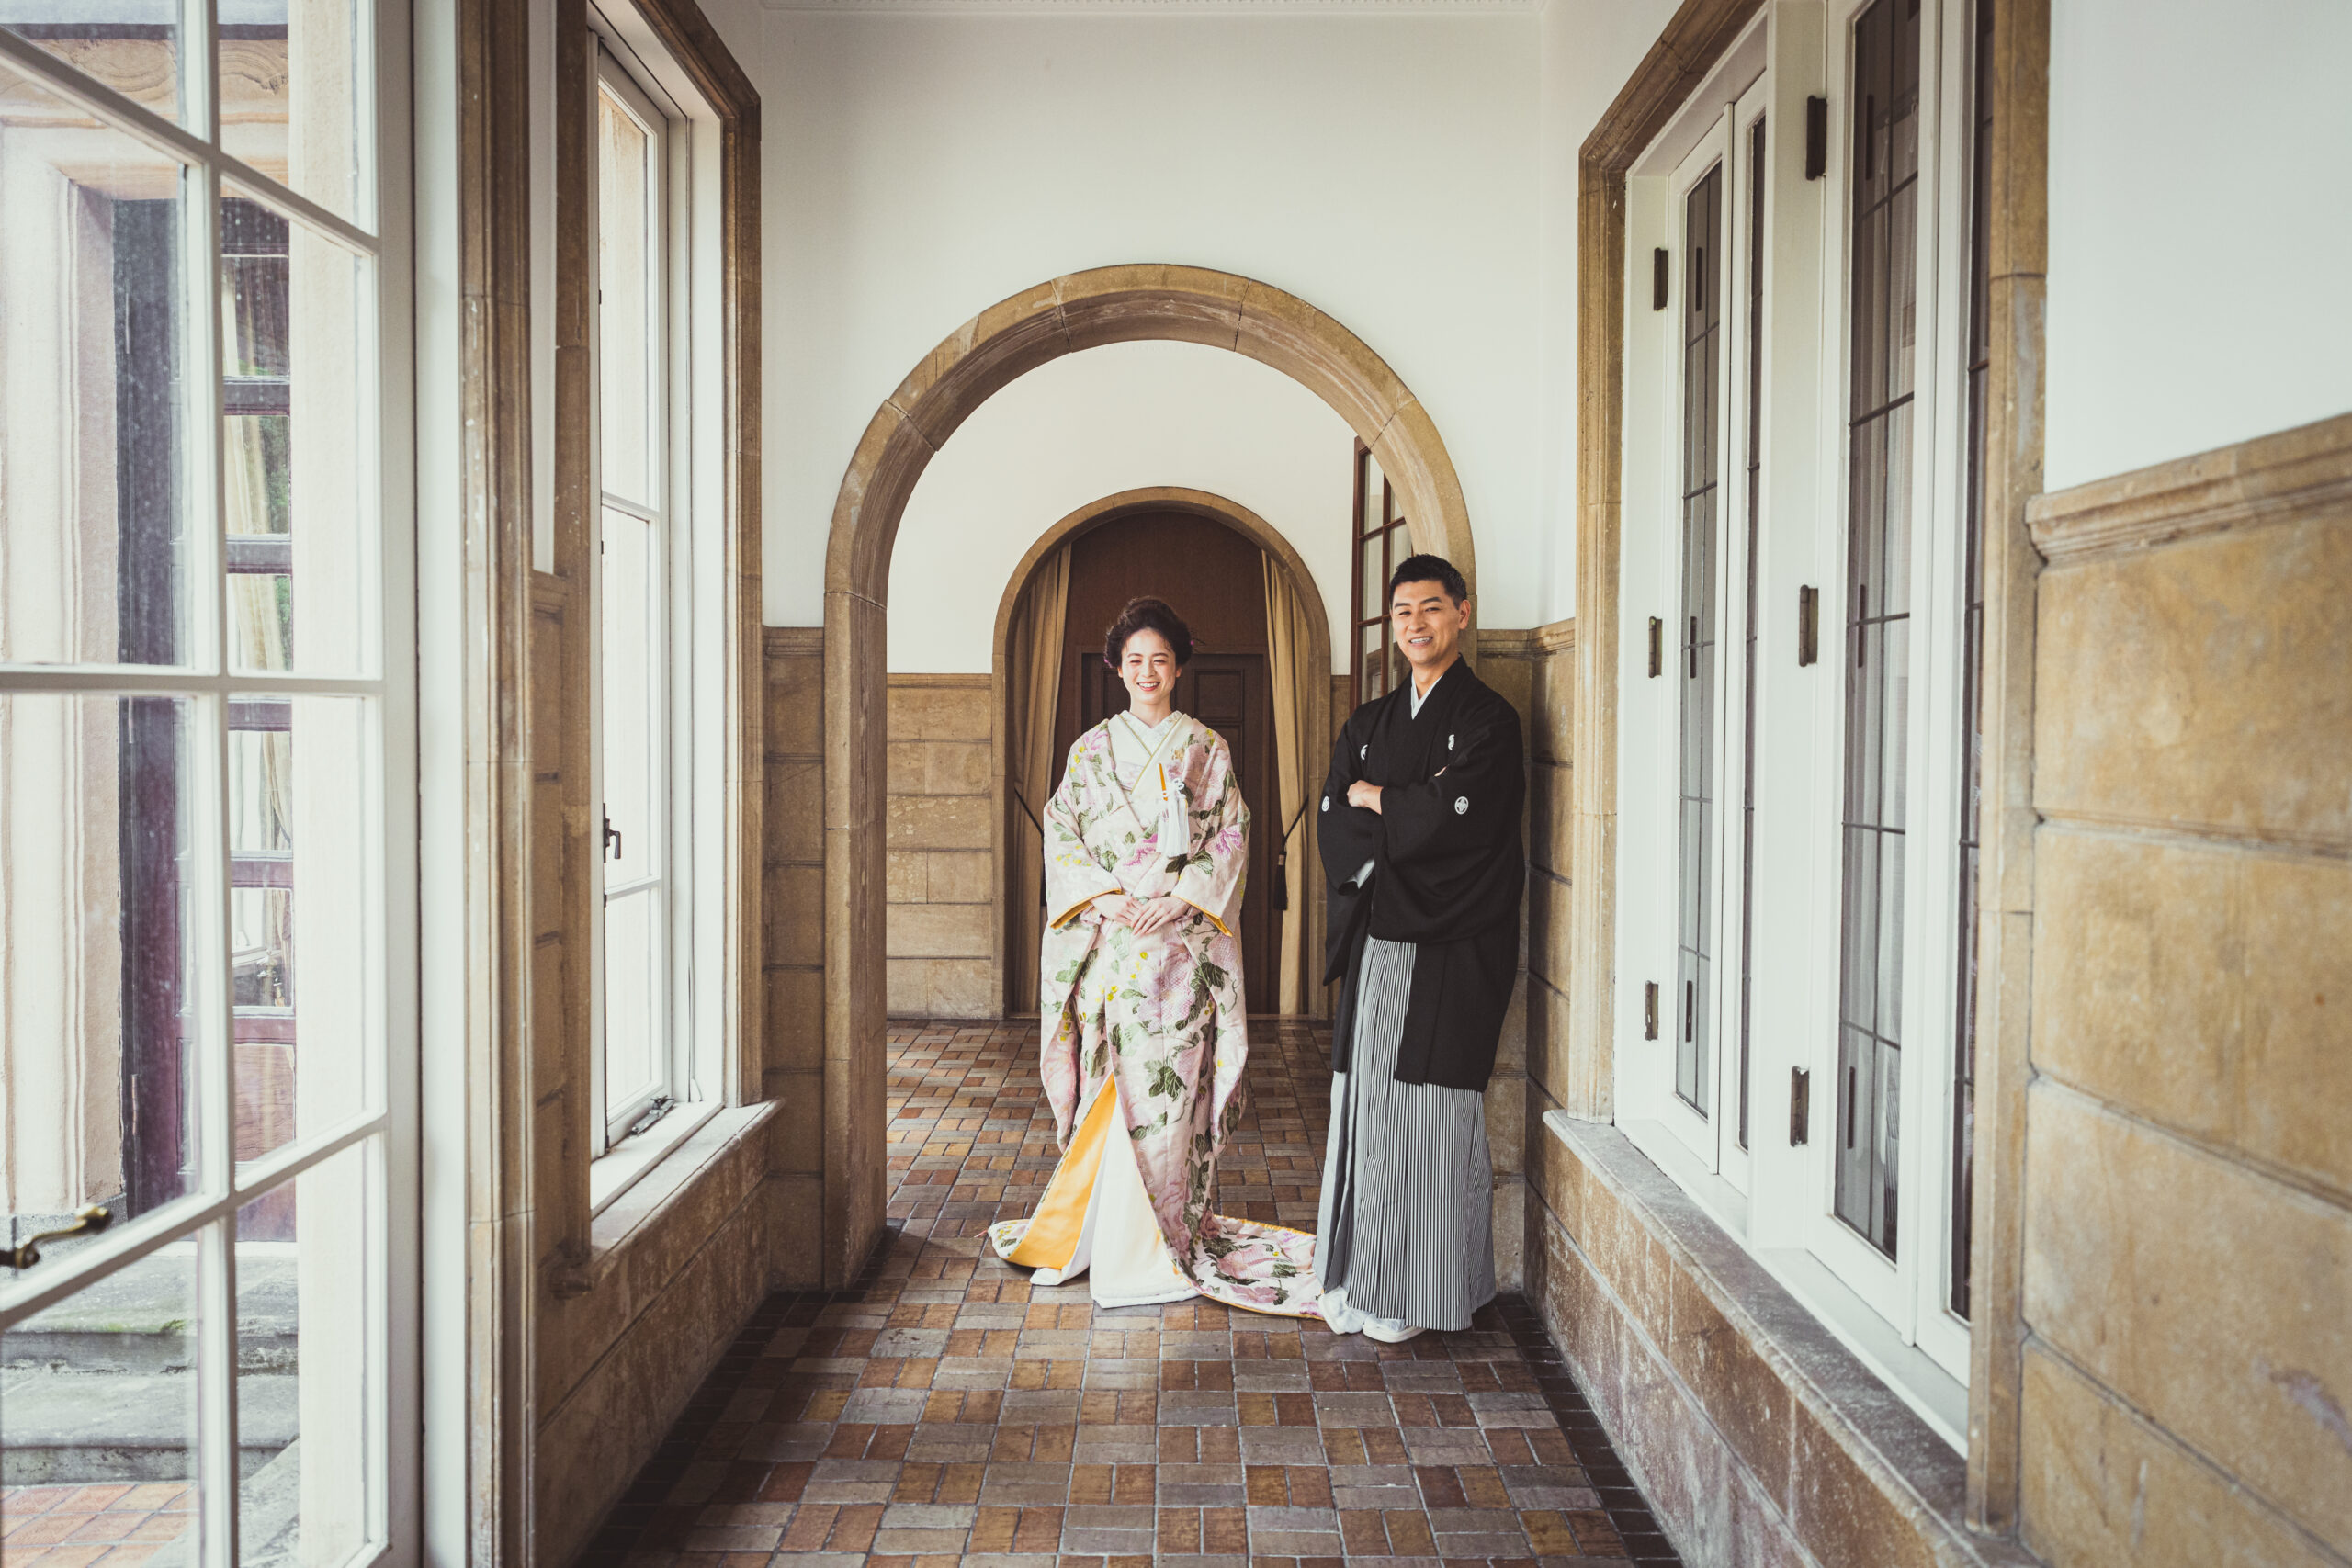 ザトリートドレッシングアディション店の提携会場、赤坂プリンスクラシックハウスは宮内庁御用達の職人によって丁寧に作られた本物のしつらえが魅力です。重厚感のある洋館に日本の伝統衣裳着物はとても相性が良く和モダンな写真を残すことが出来ます。